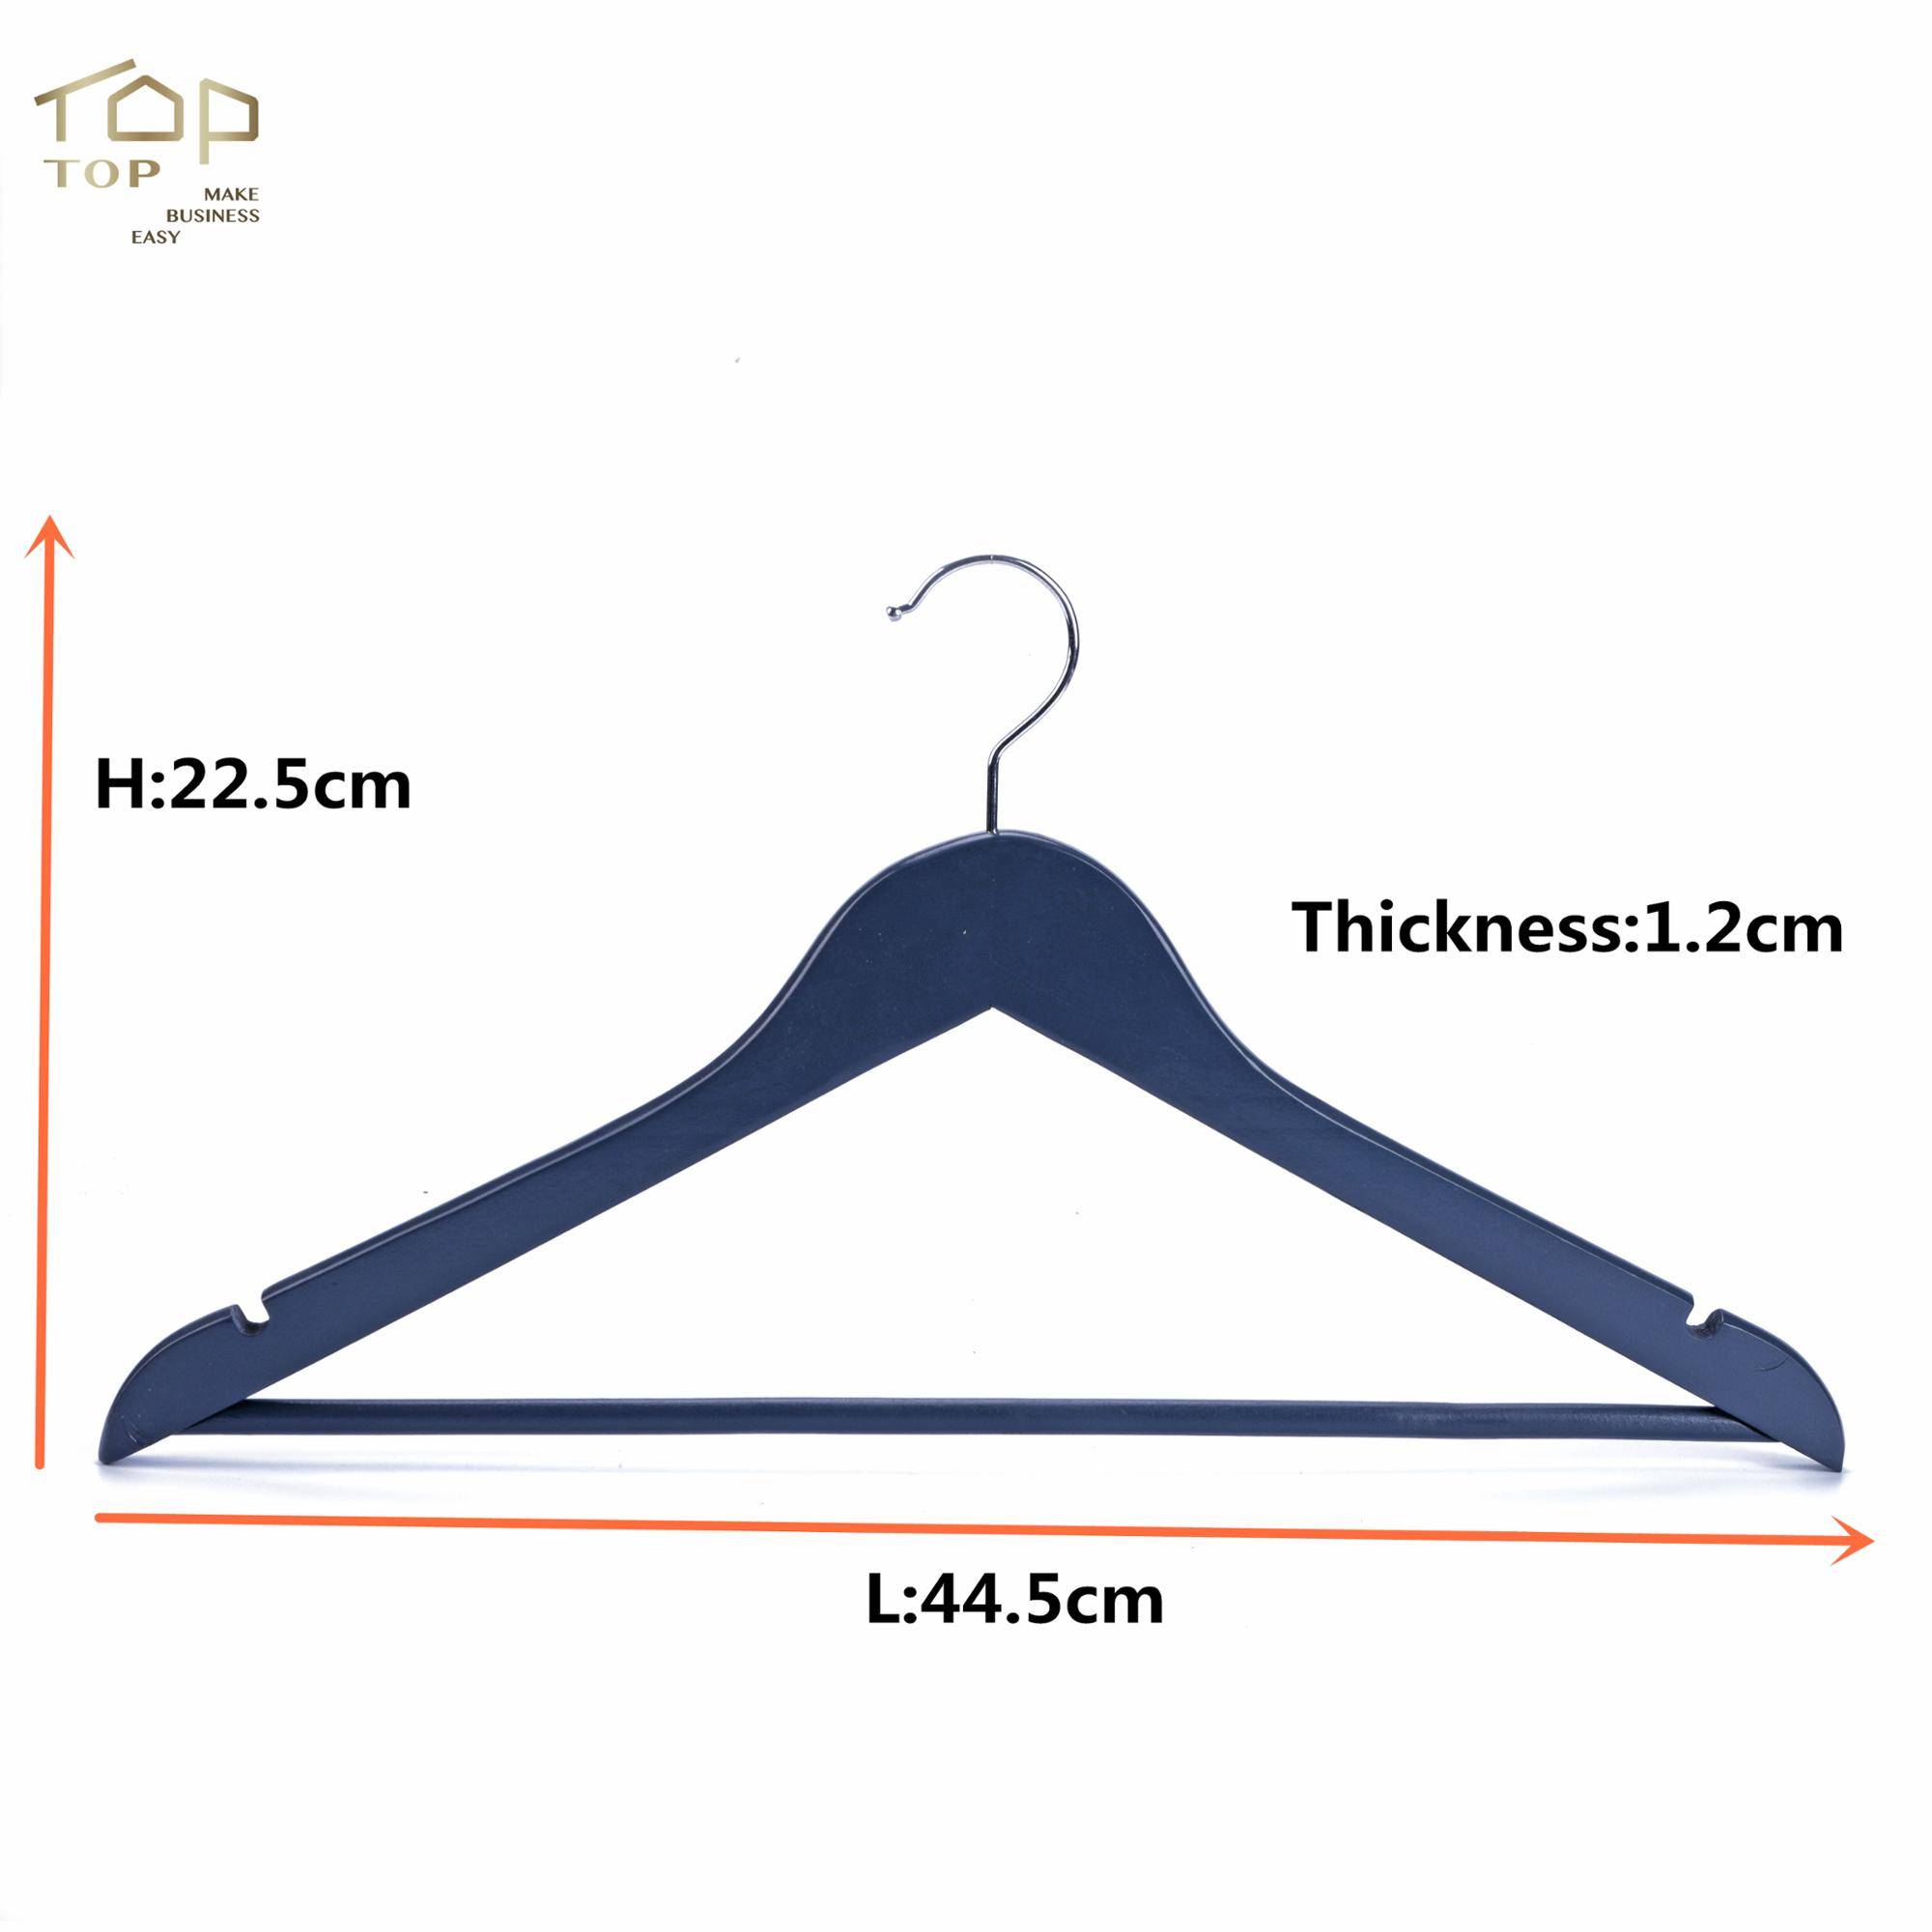 Размер вешалки для одежды: стандартные размеры вешалок, соотношение с размерами одежды